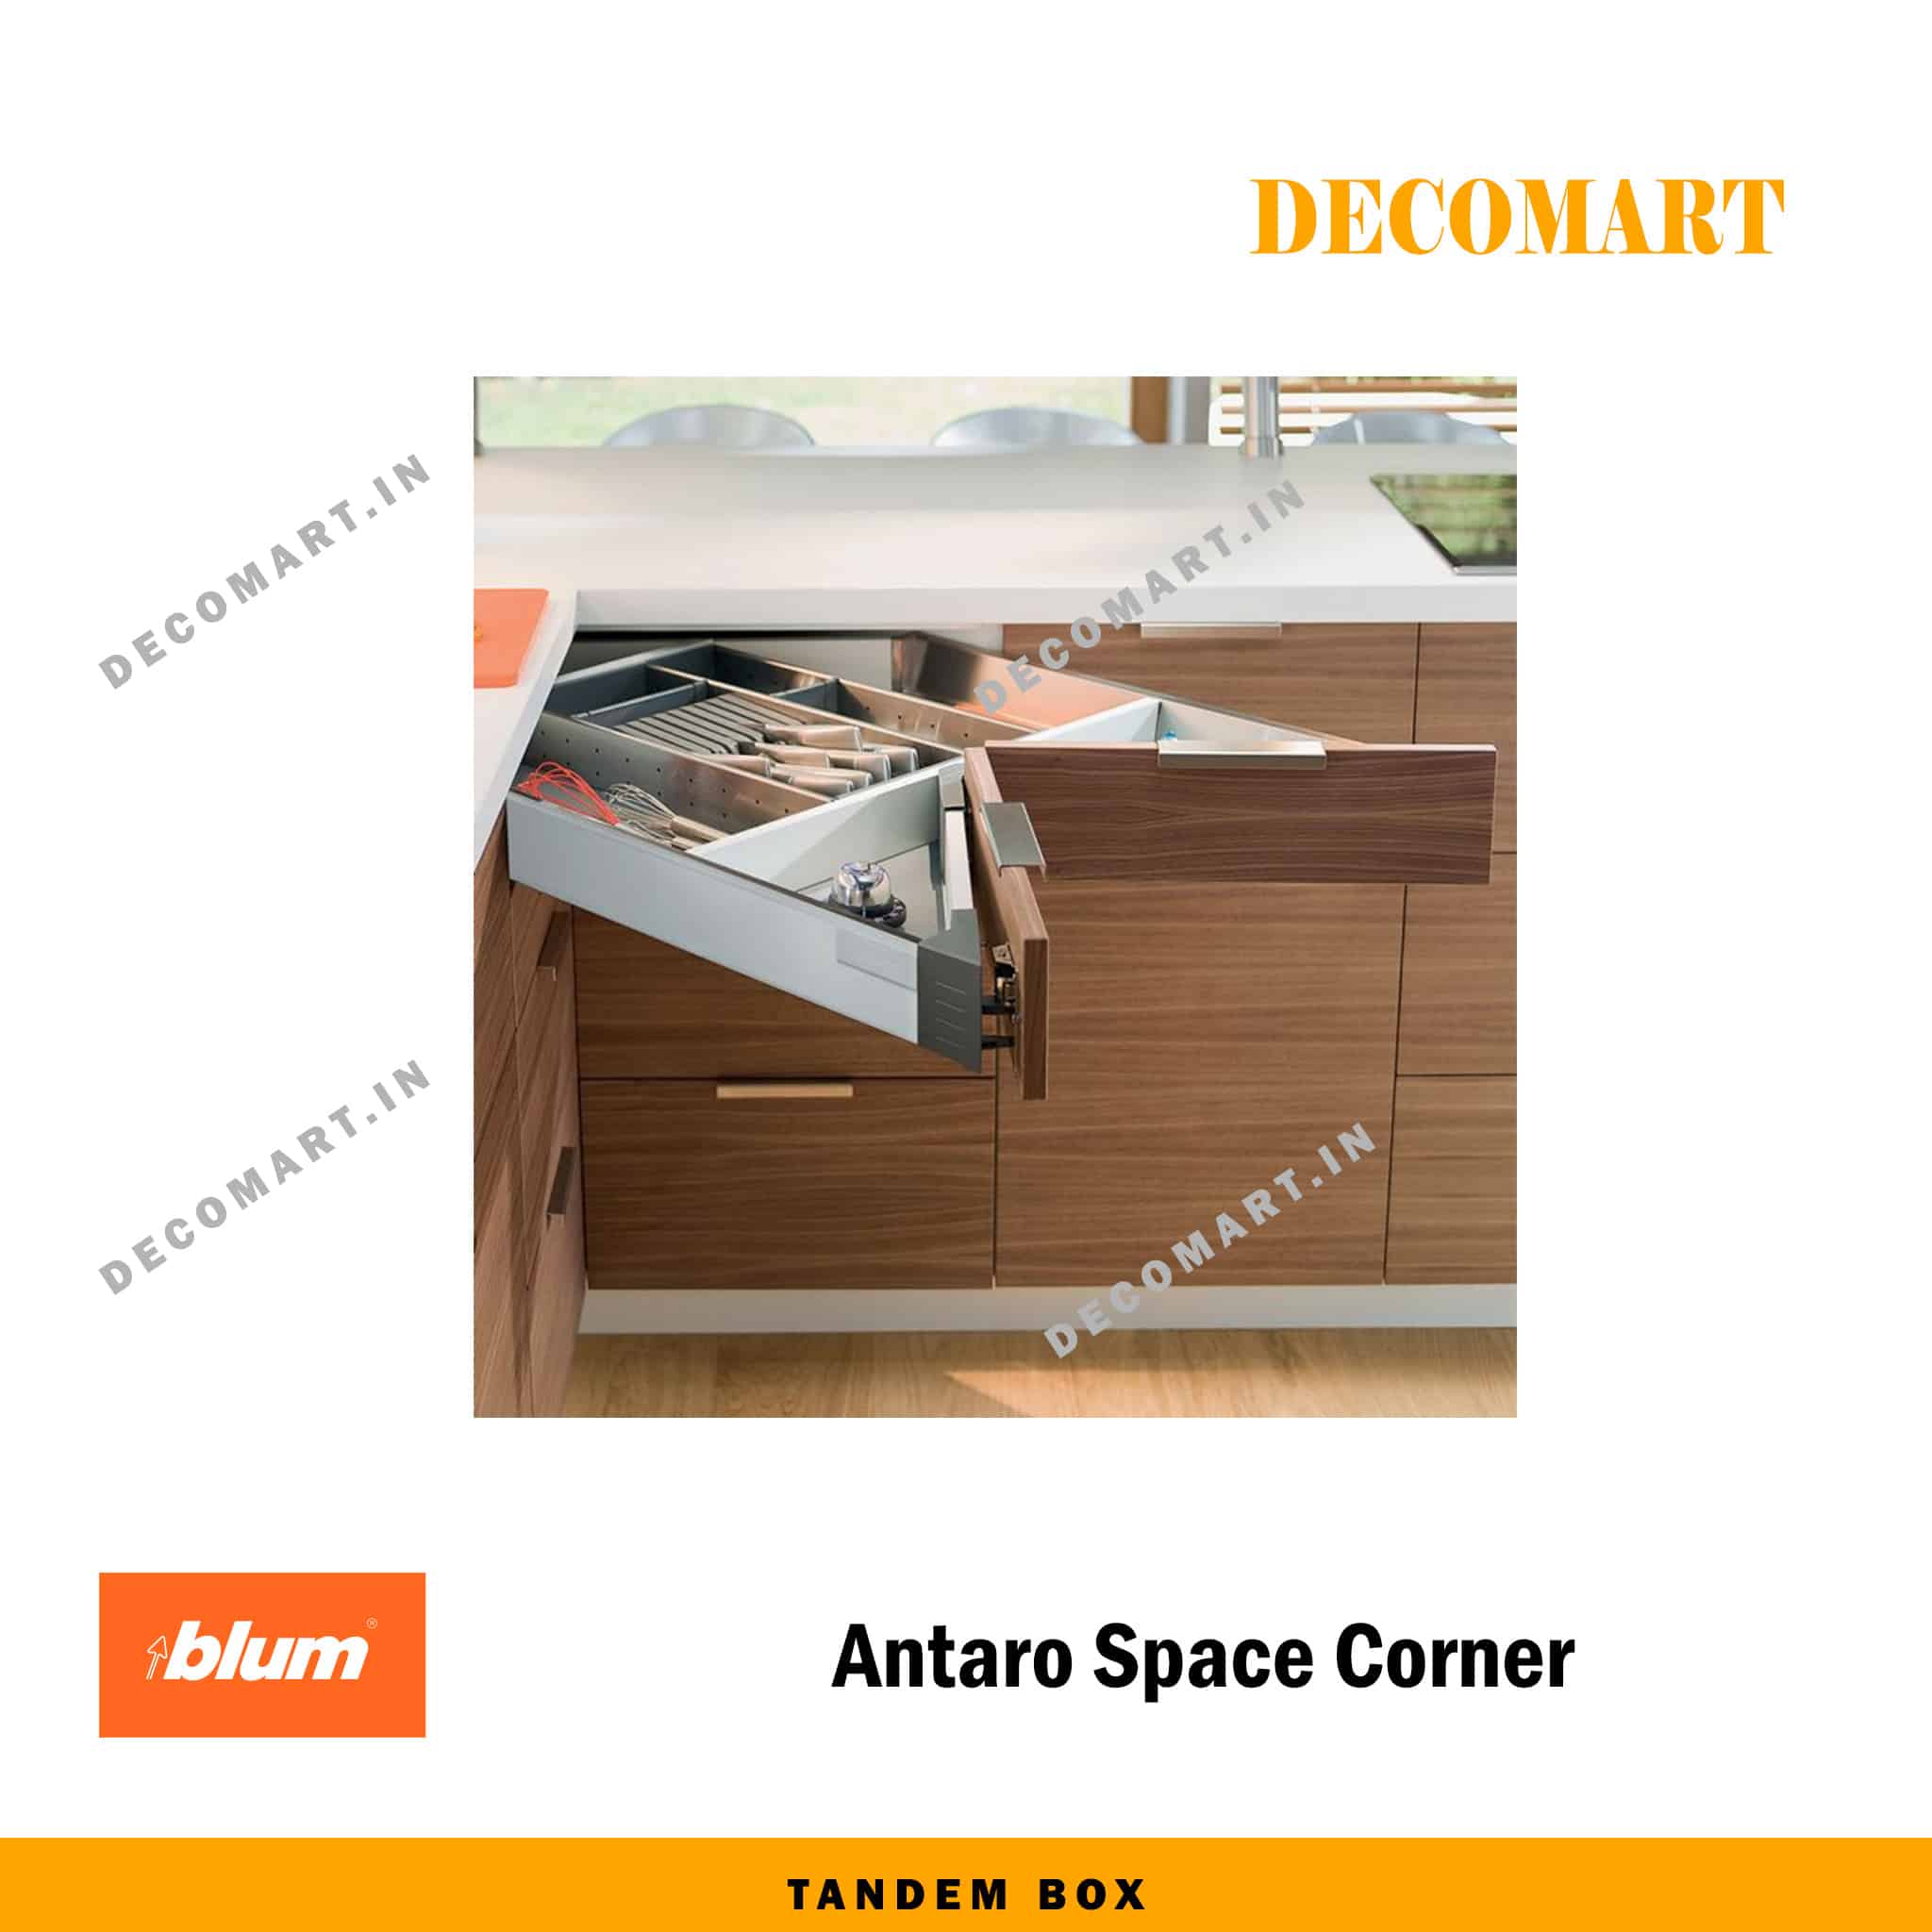 Blum Antaro Space Corner